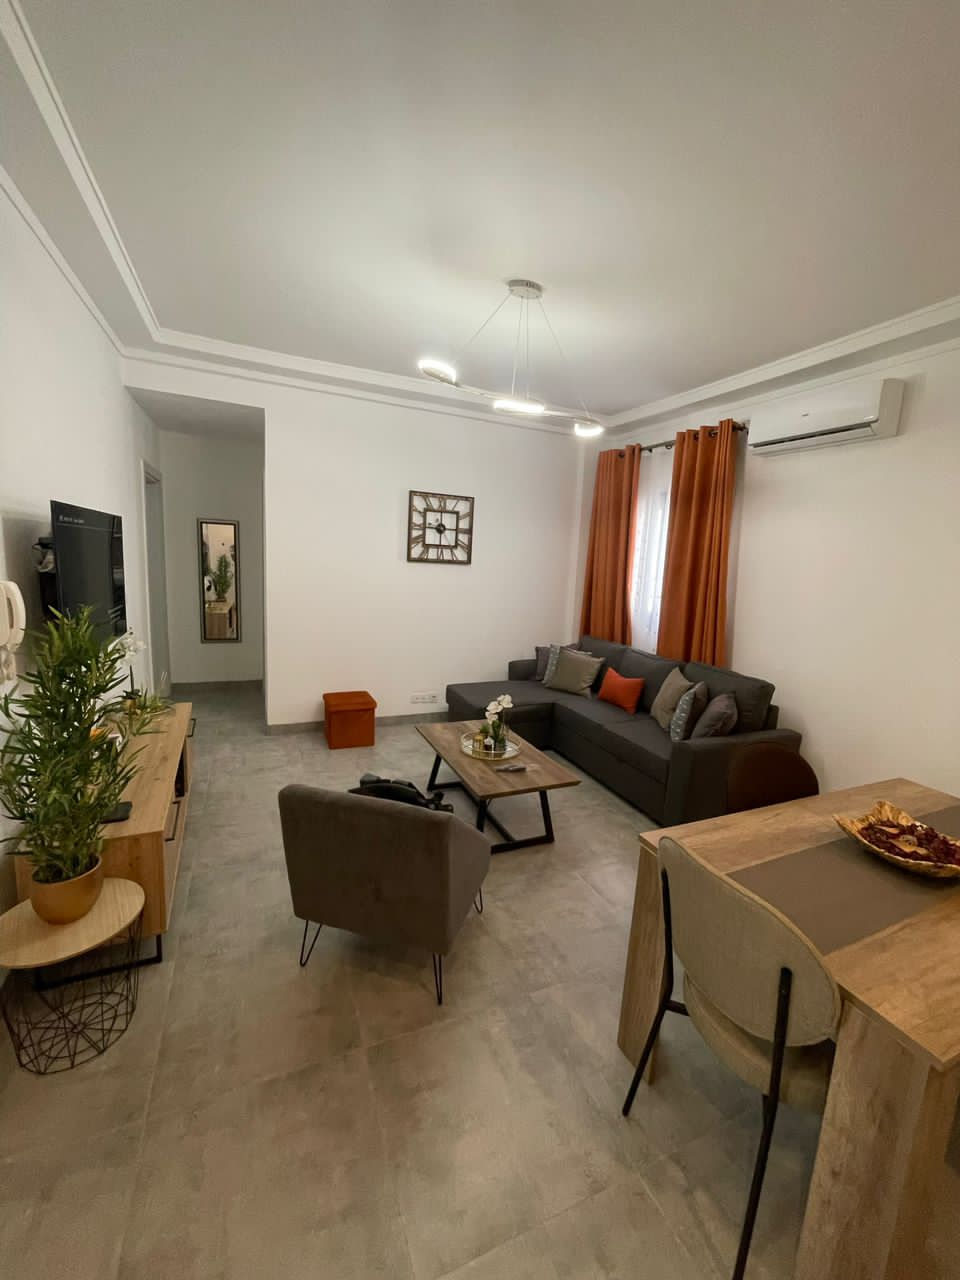 Appartement Meublé à Louer à Dakar Amitié